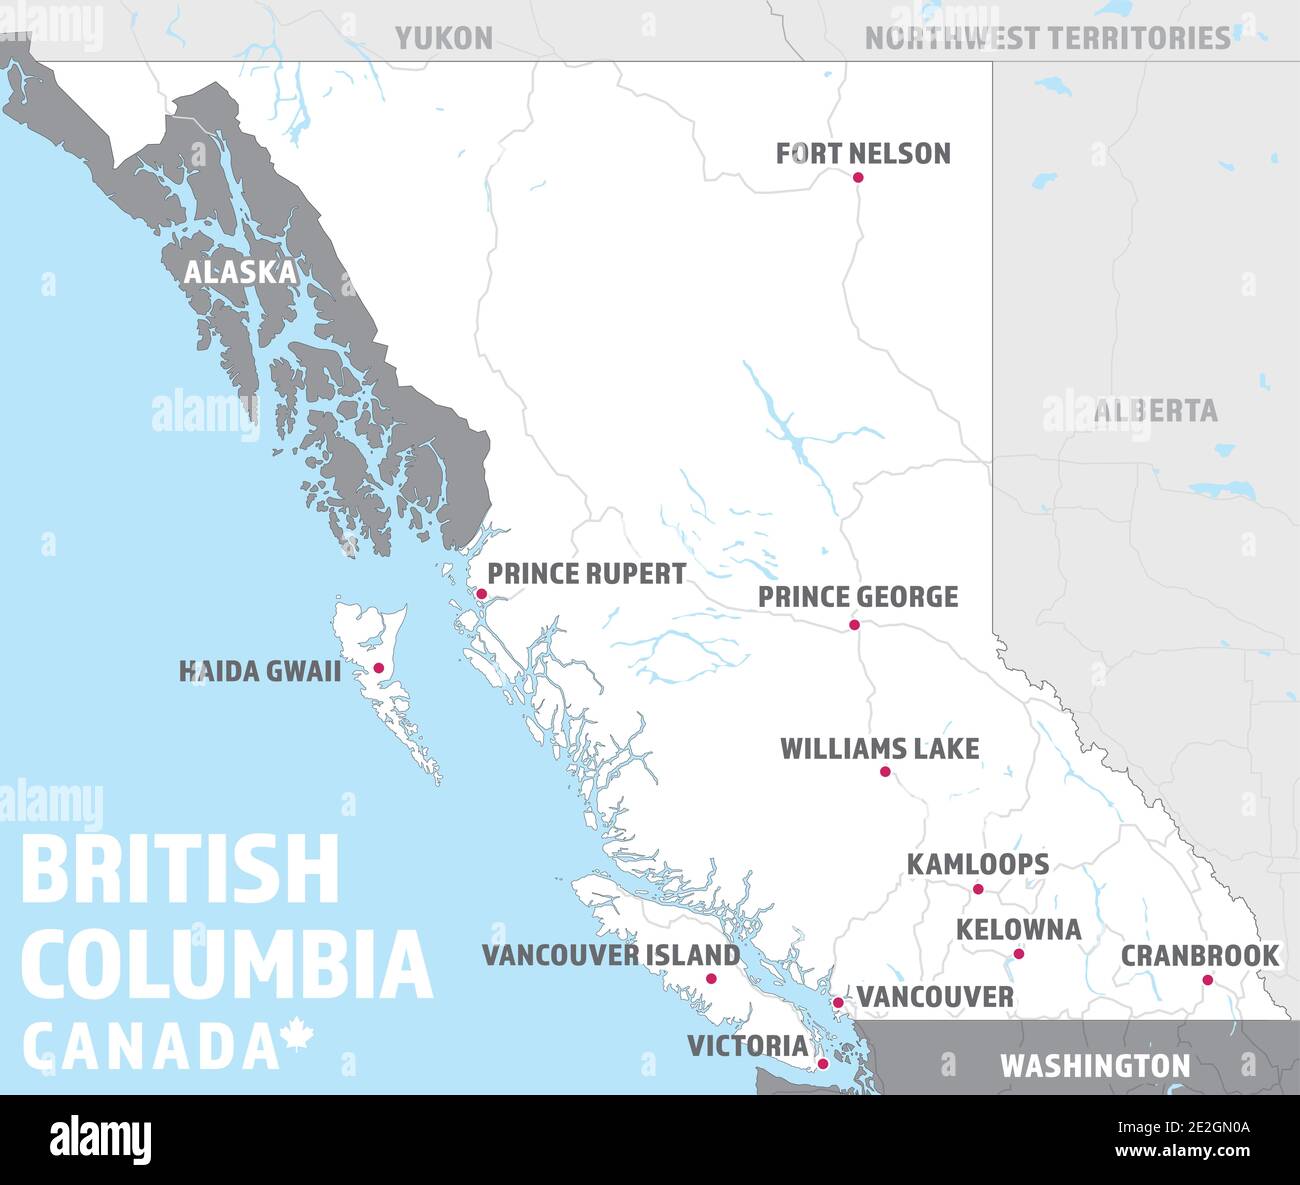 Mappa della Columbia Britannica, Canada. Semplice mappa turistica BC con città di destinazione, autostrade, laghi e province canadesi circostanti. Illustrazione Vettoriale